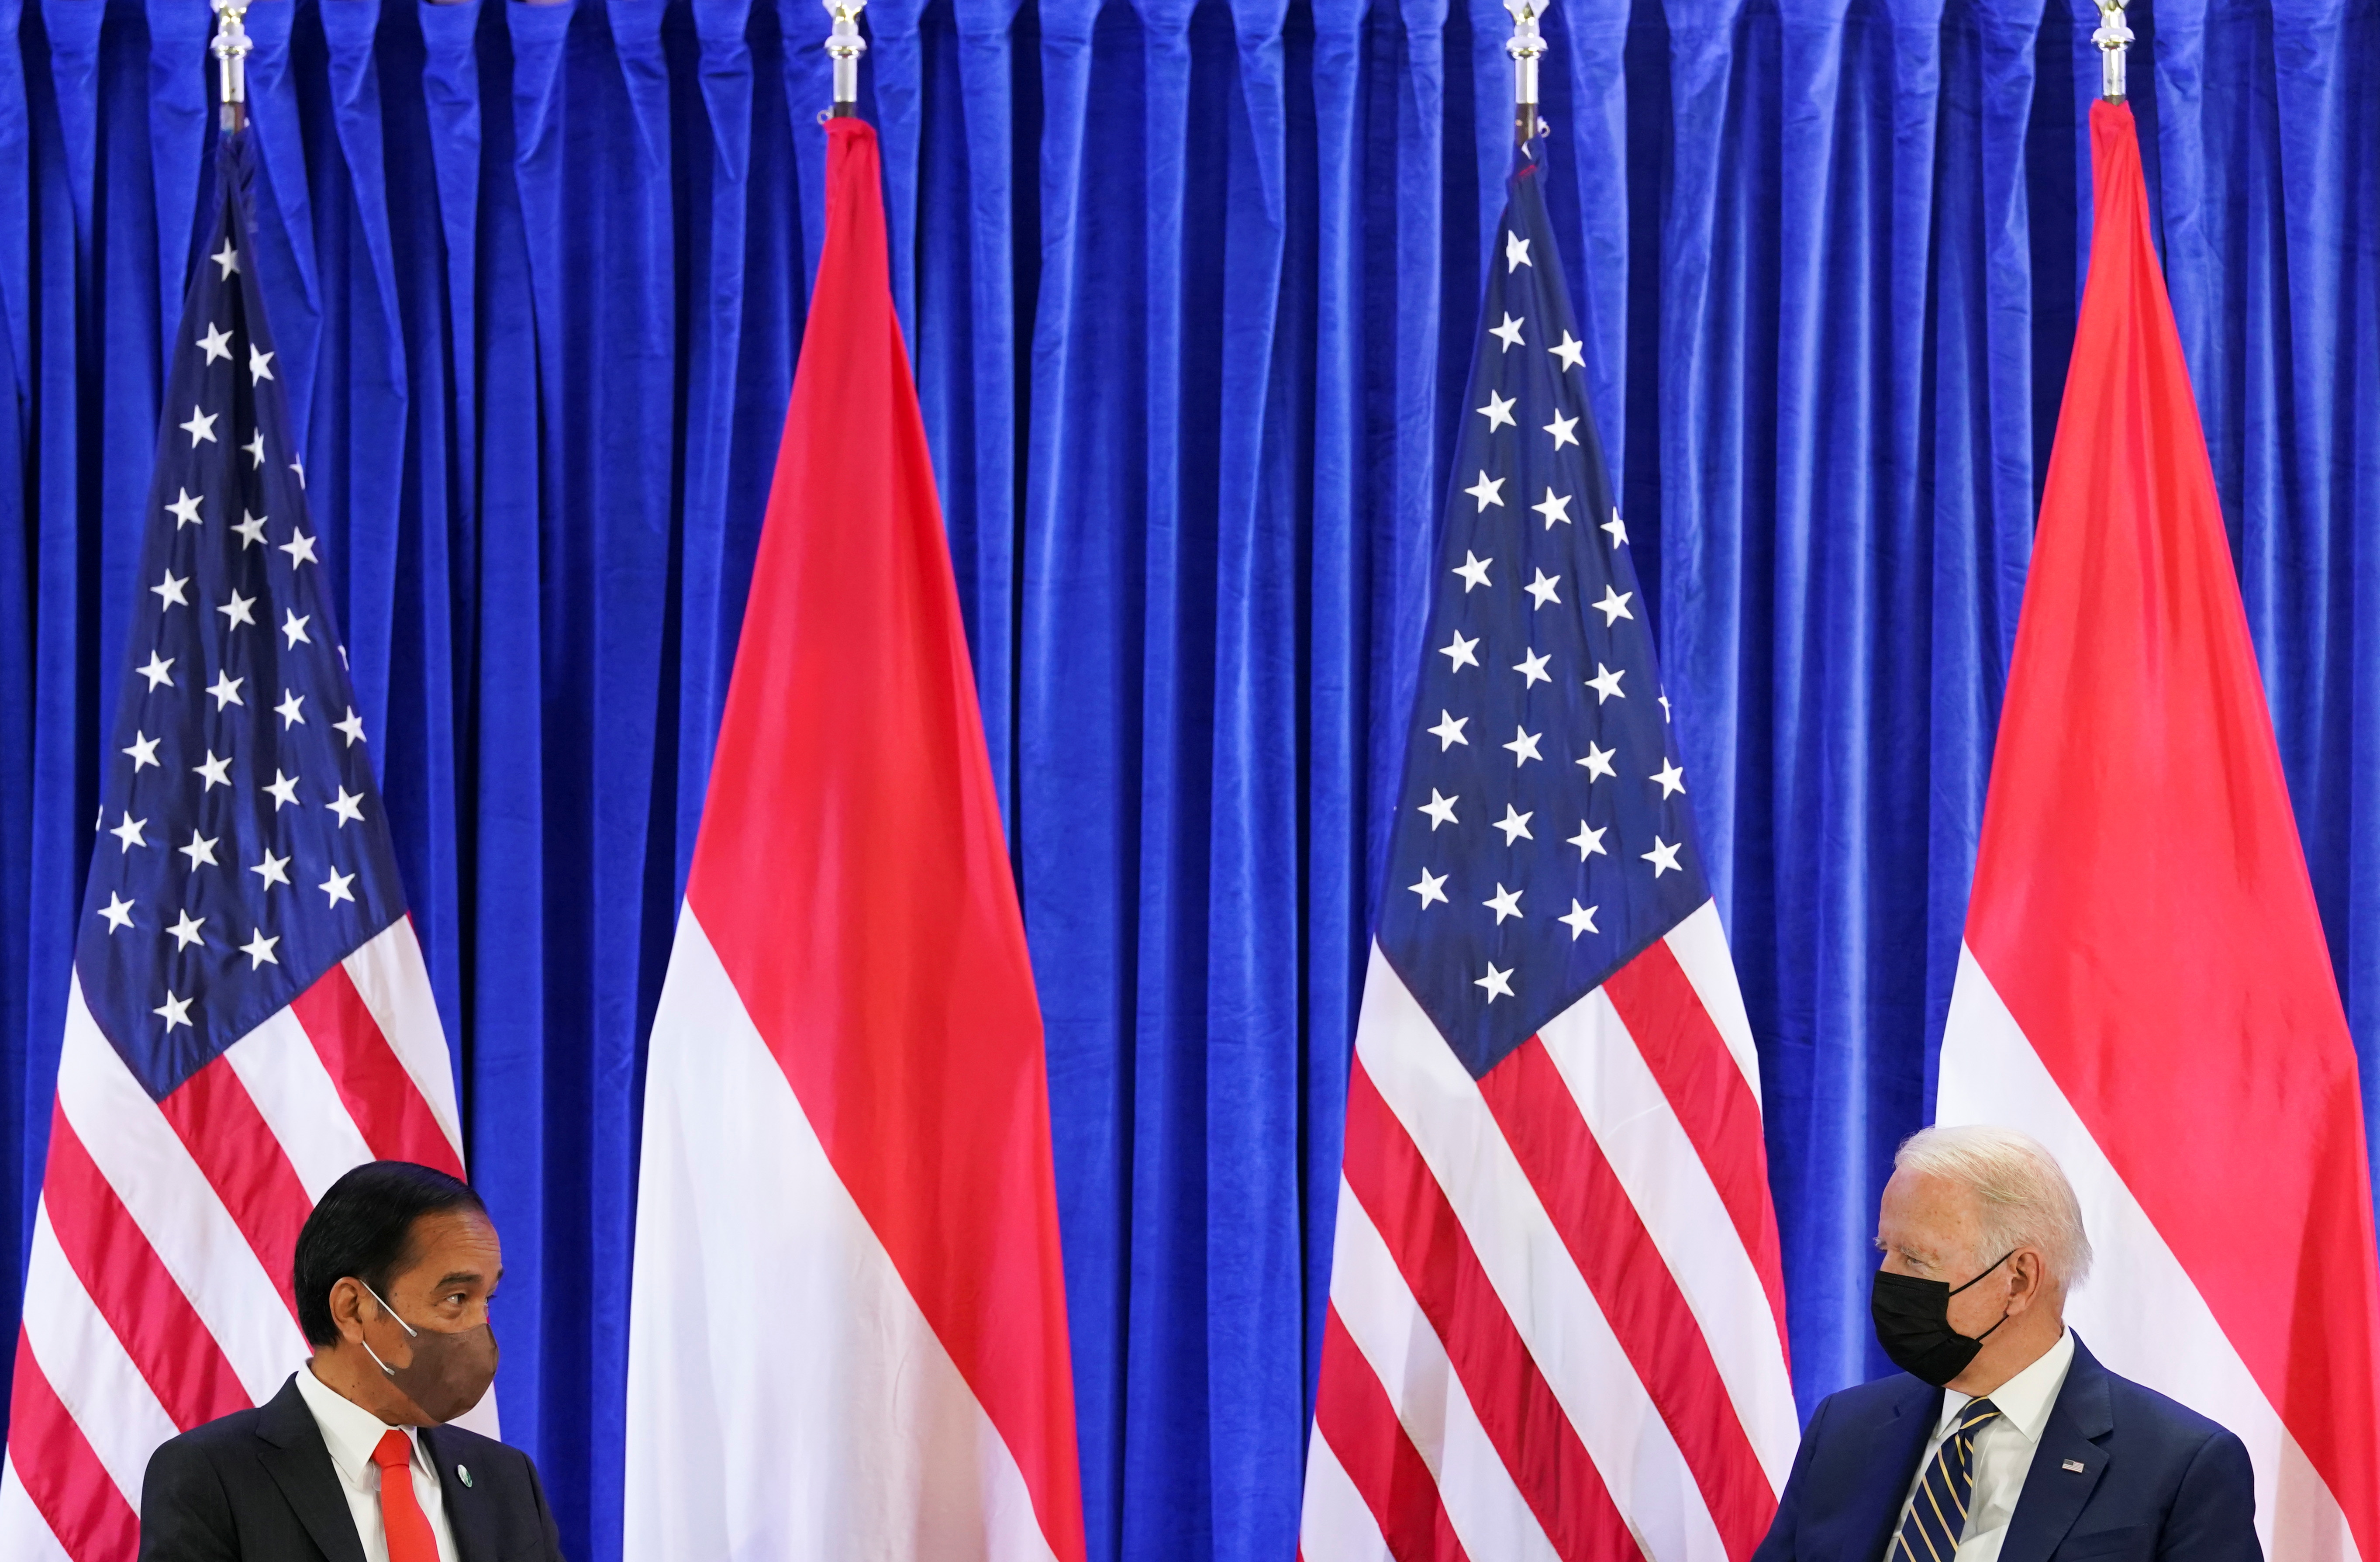 El presidente de Indonesia, Joko Widodo, y el presidente de Estados Unidos, Joe Biden, conversan durante una reunión bilateral en la Conferencia de la ONU sobre el Cambio Climático (COP26) en Glasgow, Escocia, Gran Bretaña, el 1 de noviembre de 2021. REUTERS/Kevin Lamarque/Archivo